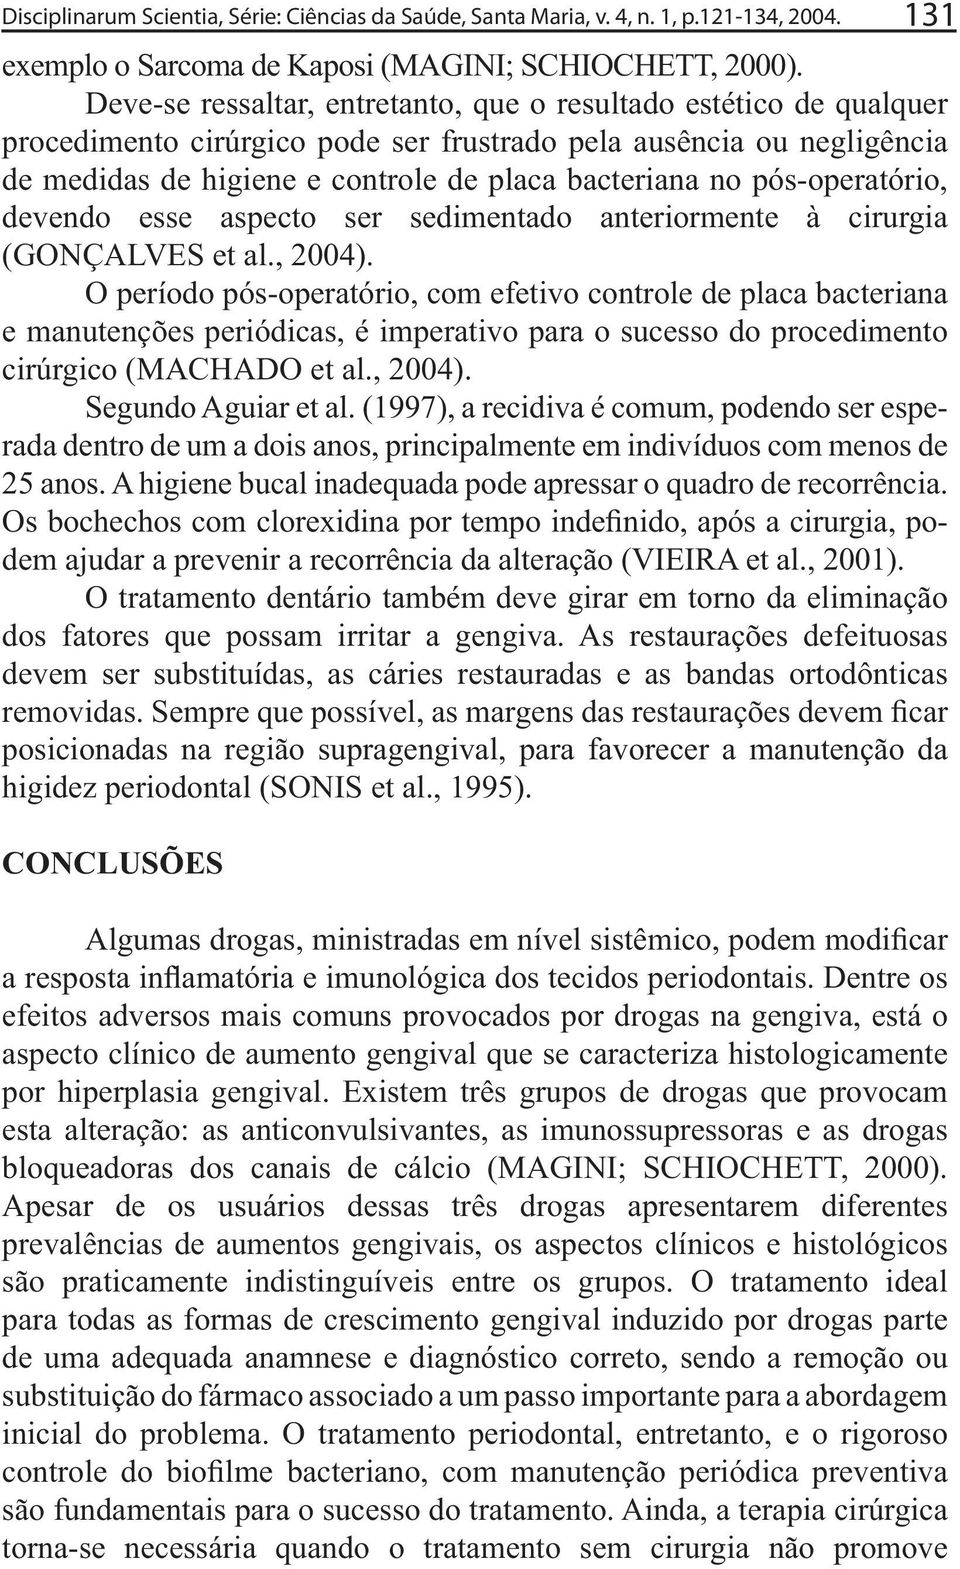 pós-operatório, (GONÇALVES et al., 2004). O período pós-operatório, com efetivo controle de placa bacteriana cirúrgico (MACHADO et al., 2004). Segundo Aguiar et al.